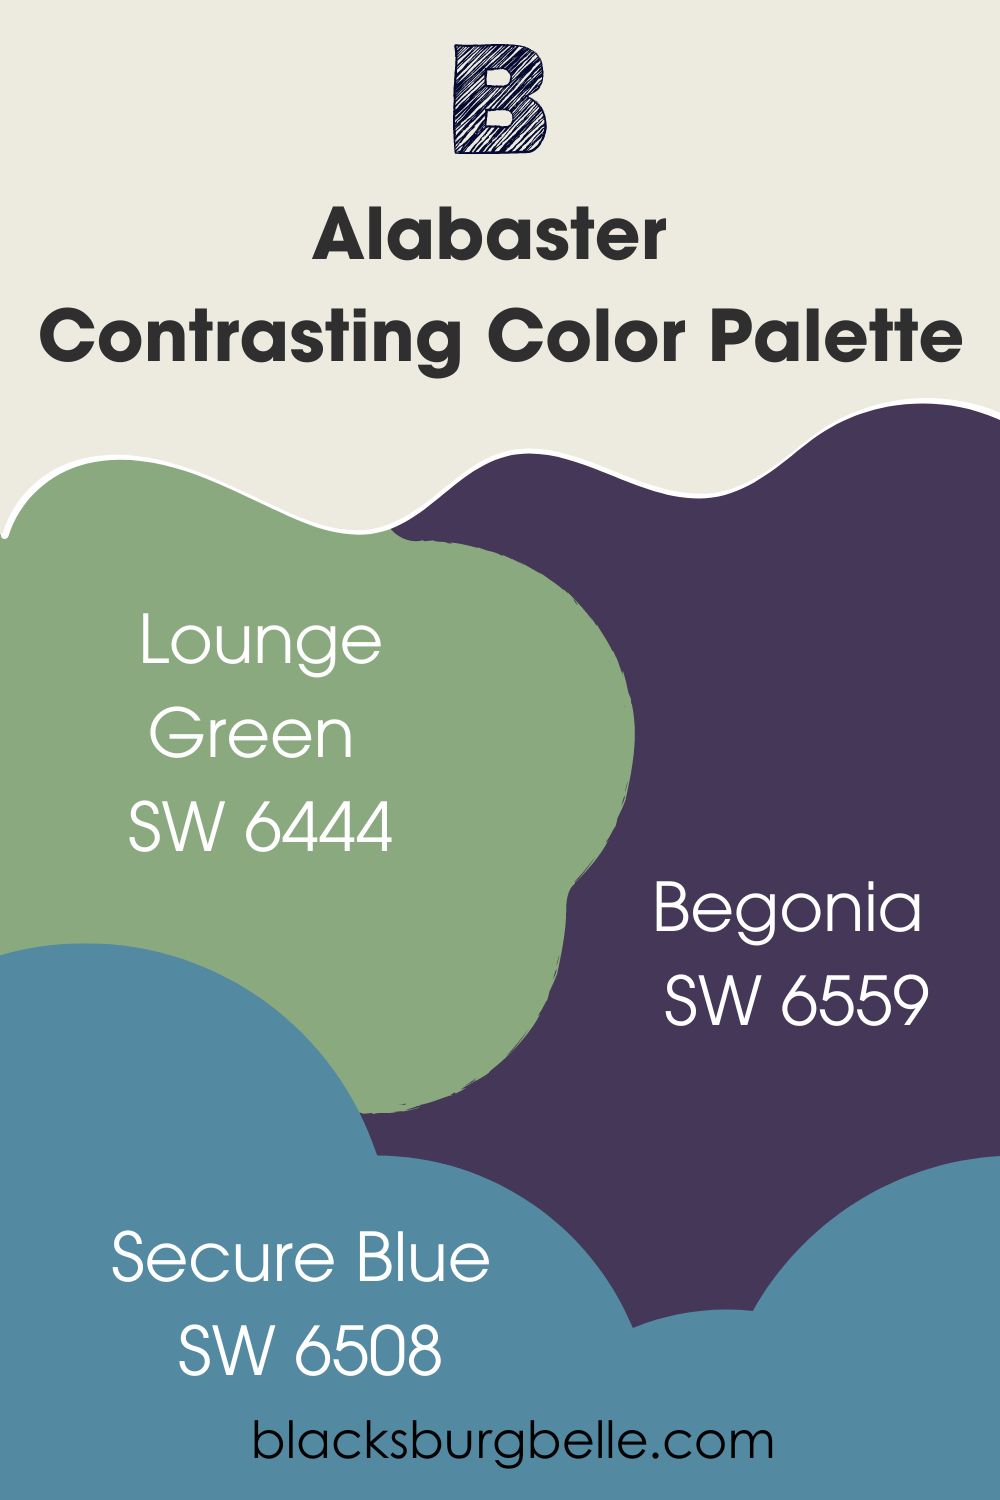 Alabaster Contrasting Color Palette